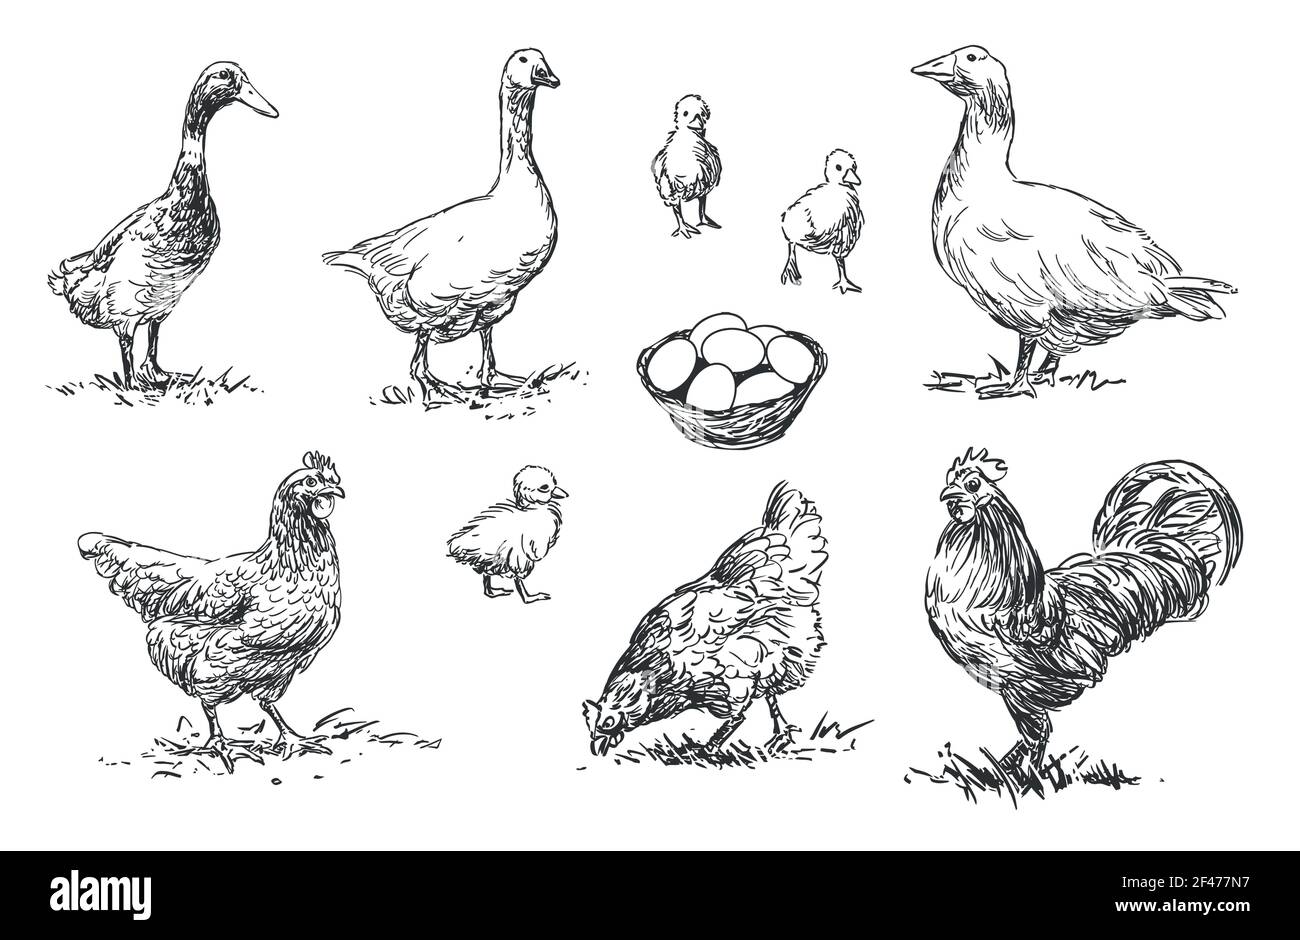 Geflügel - Satz von Nutztieren Illustrationen, schwarz-weiß Zeichnungen Stock Vektor